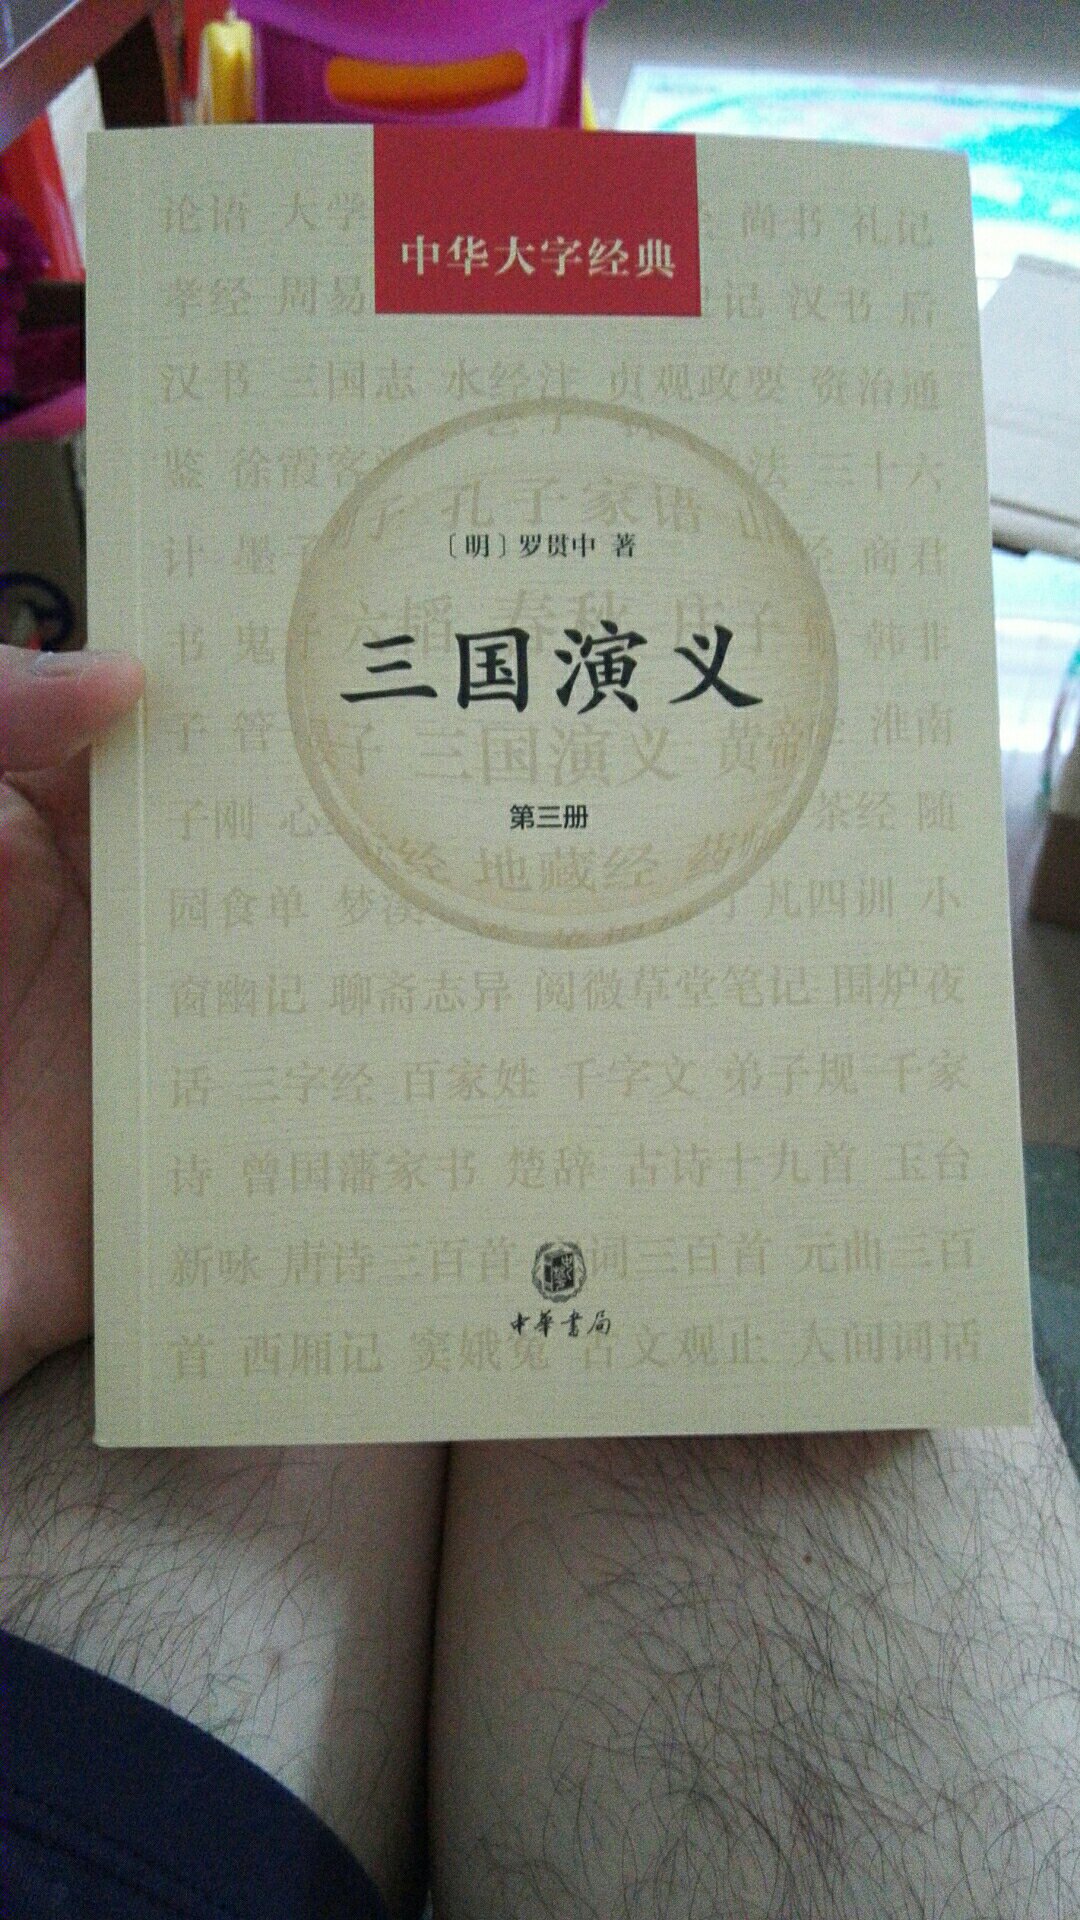 买来给小朋友看，也算是收藏。中华书局出品的大字版，字非常大，看起来很舒服。